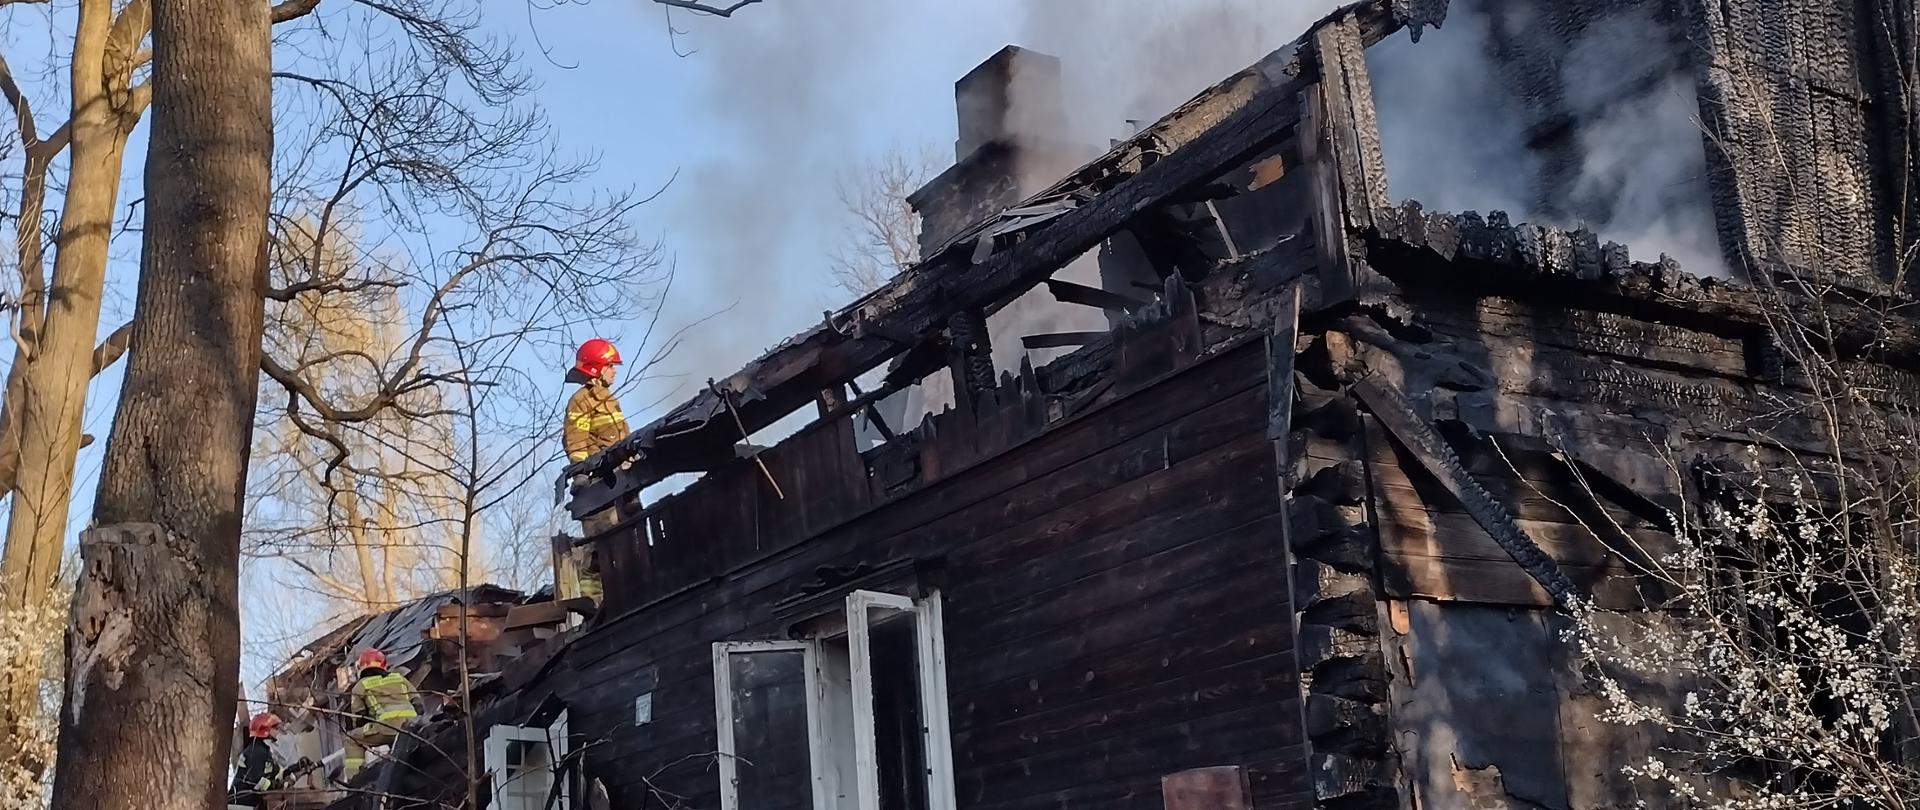 Spalony drewniany pustostan po budynku mieszkalnym. Na dachu pracujący strażak.